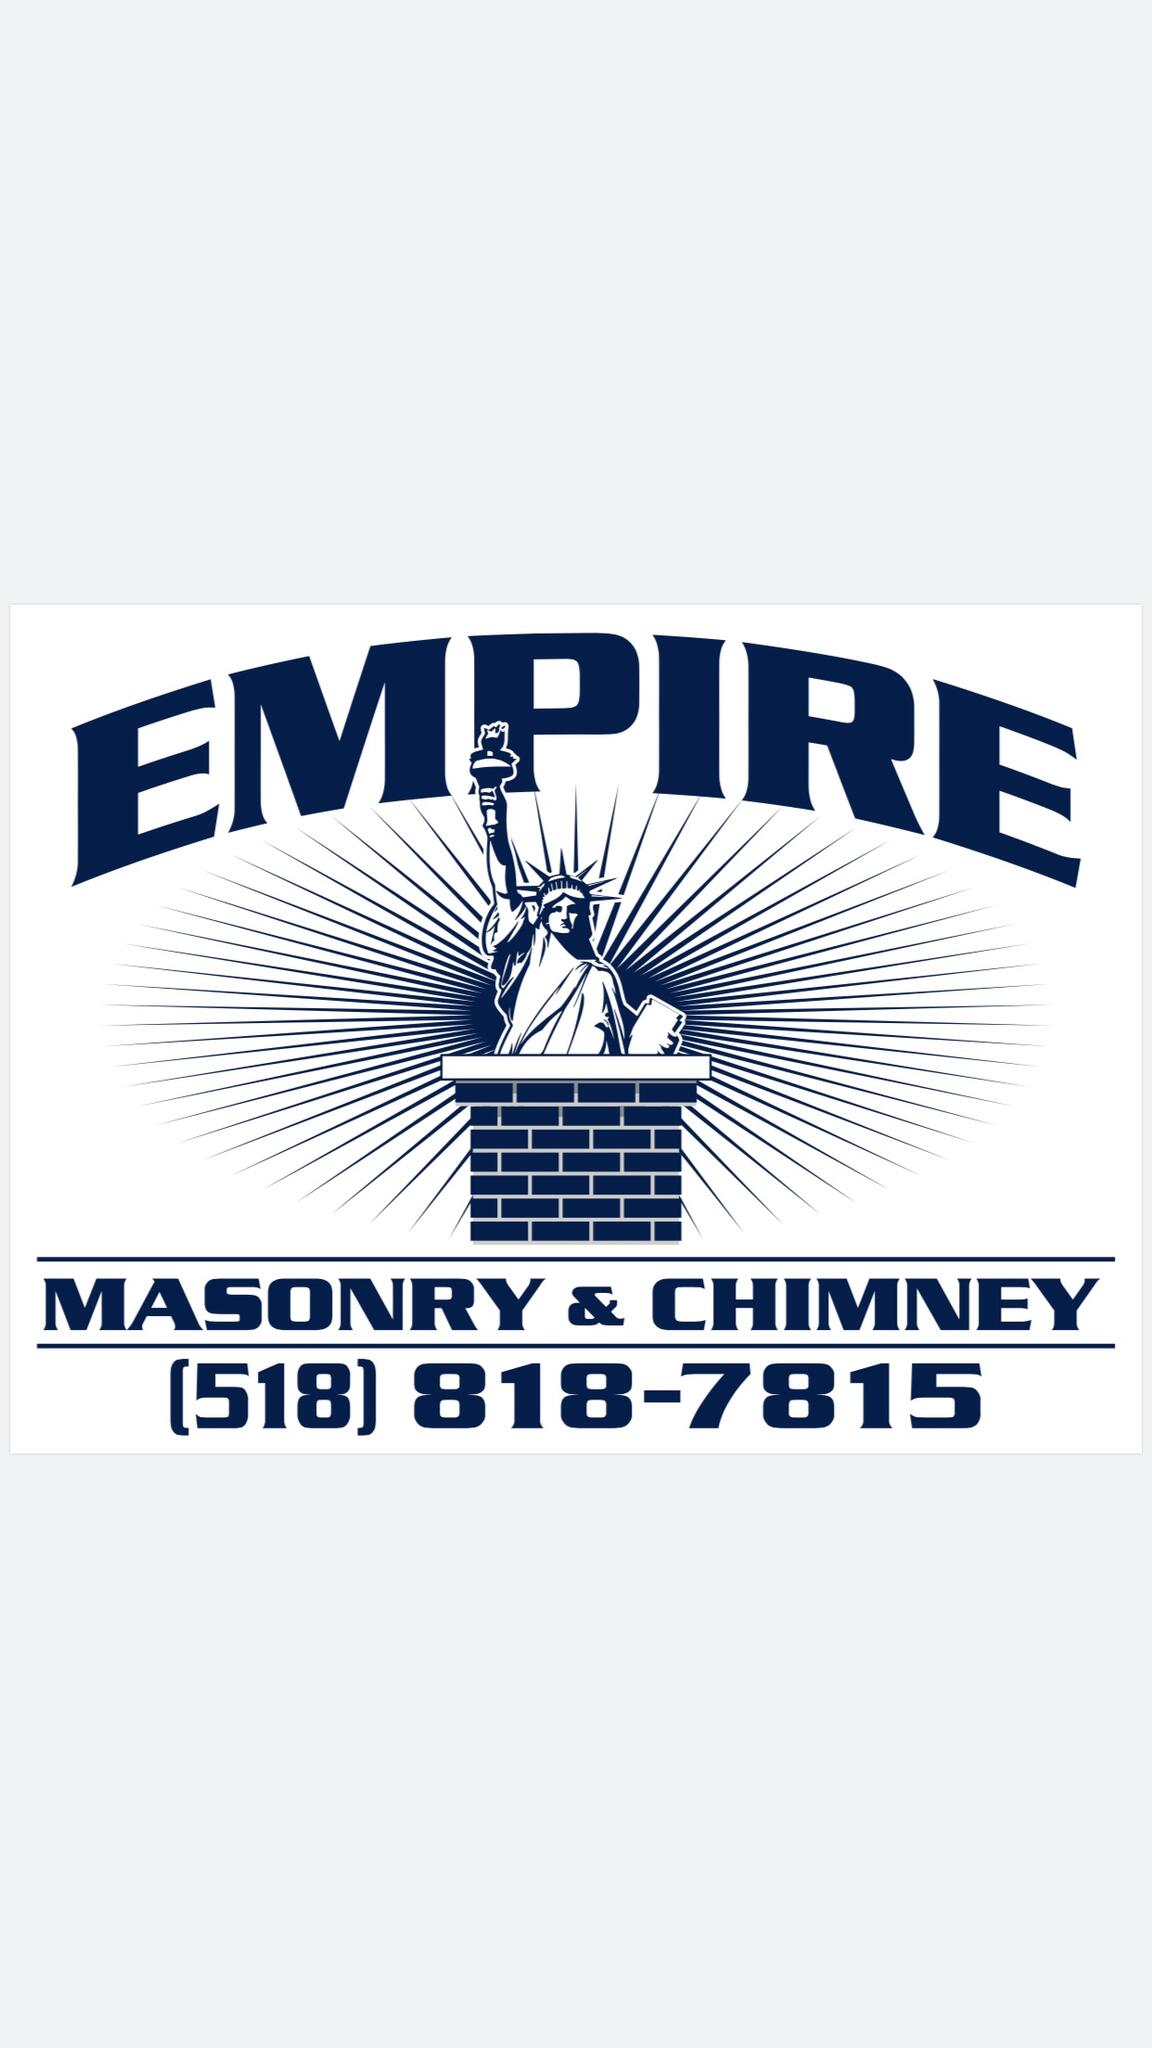 Empire Masonry & Chimney - Clarksville, NY - Nextdoor